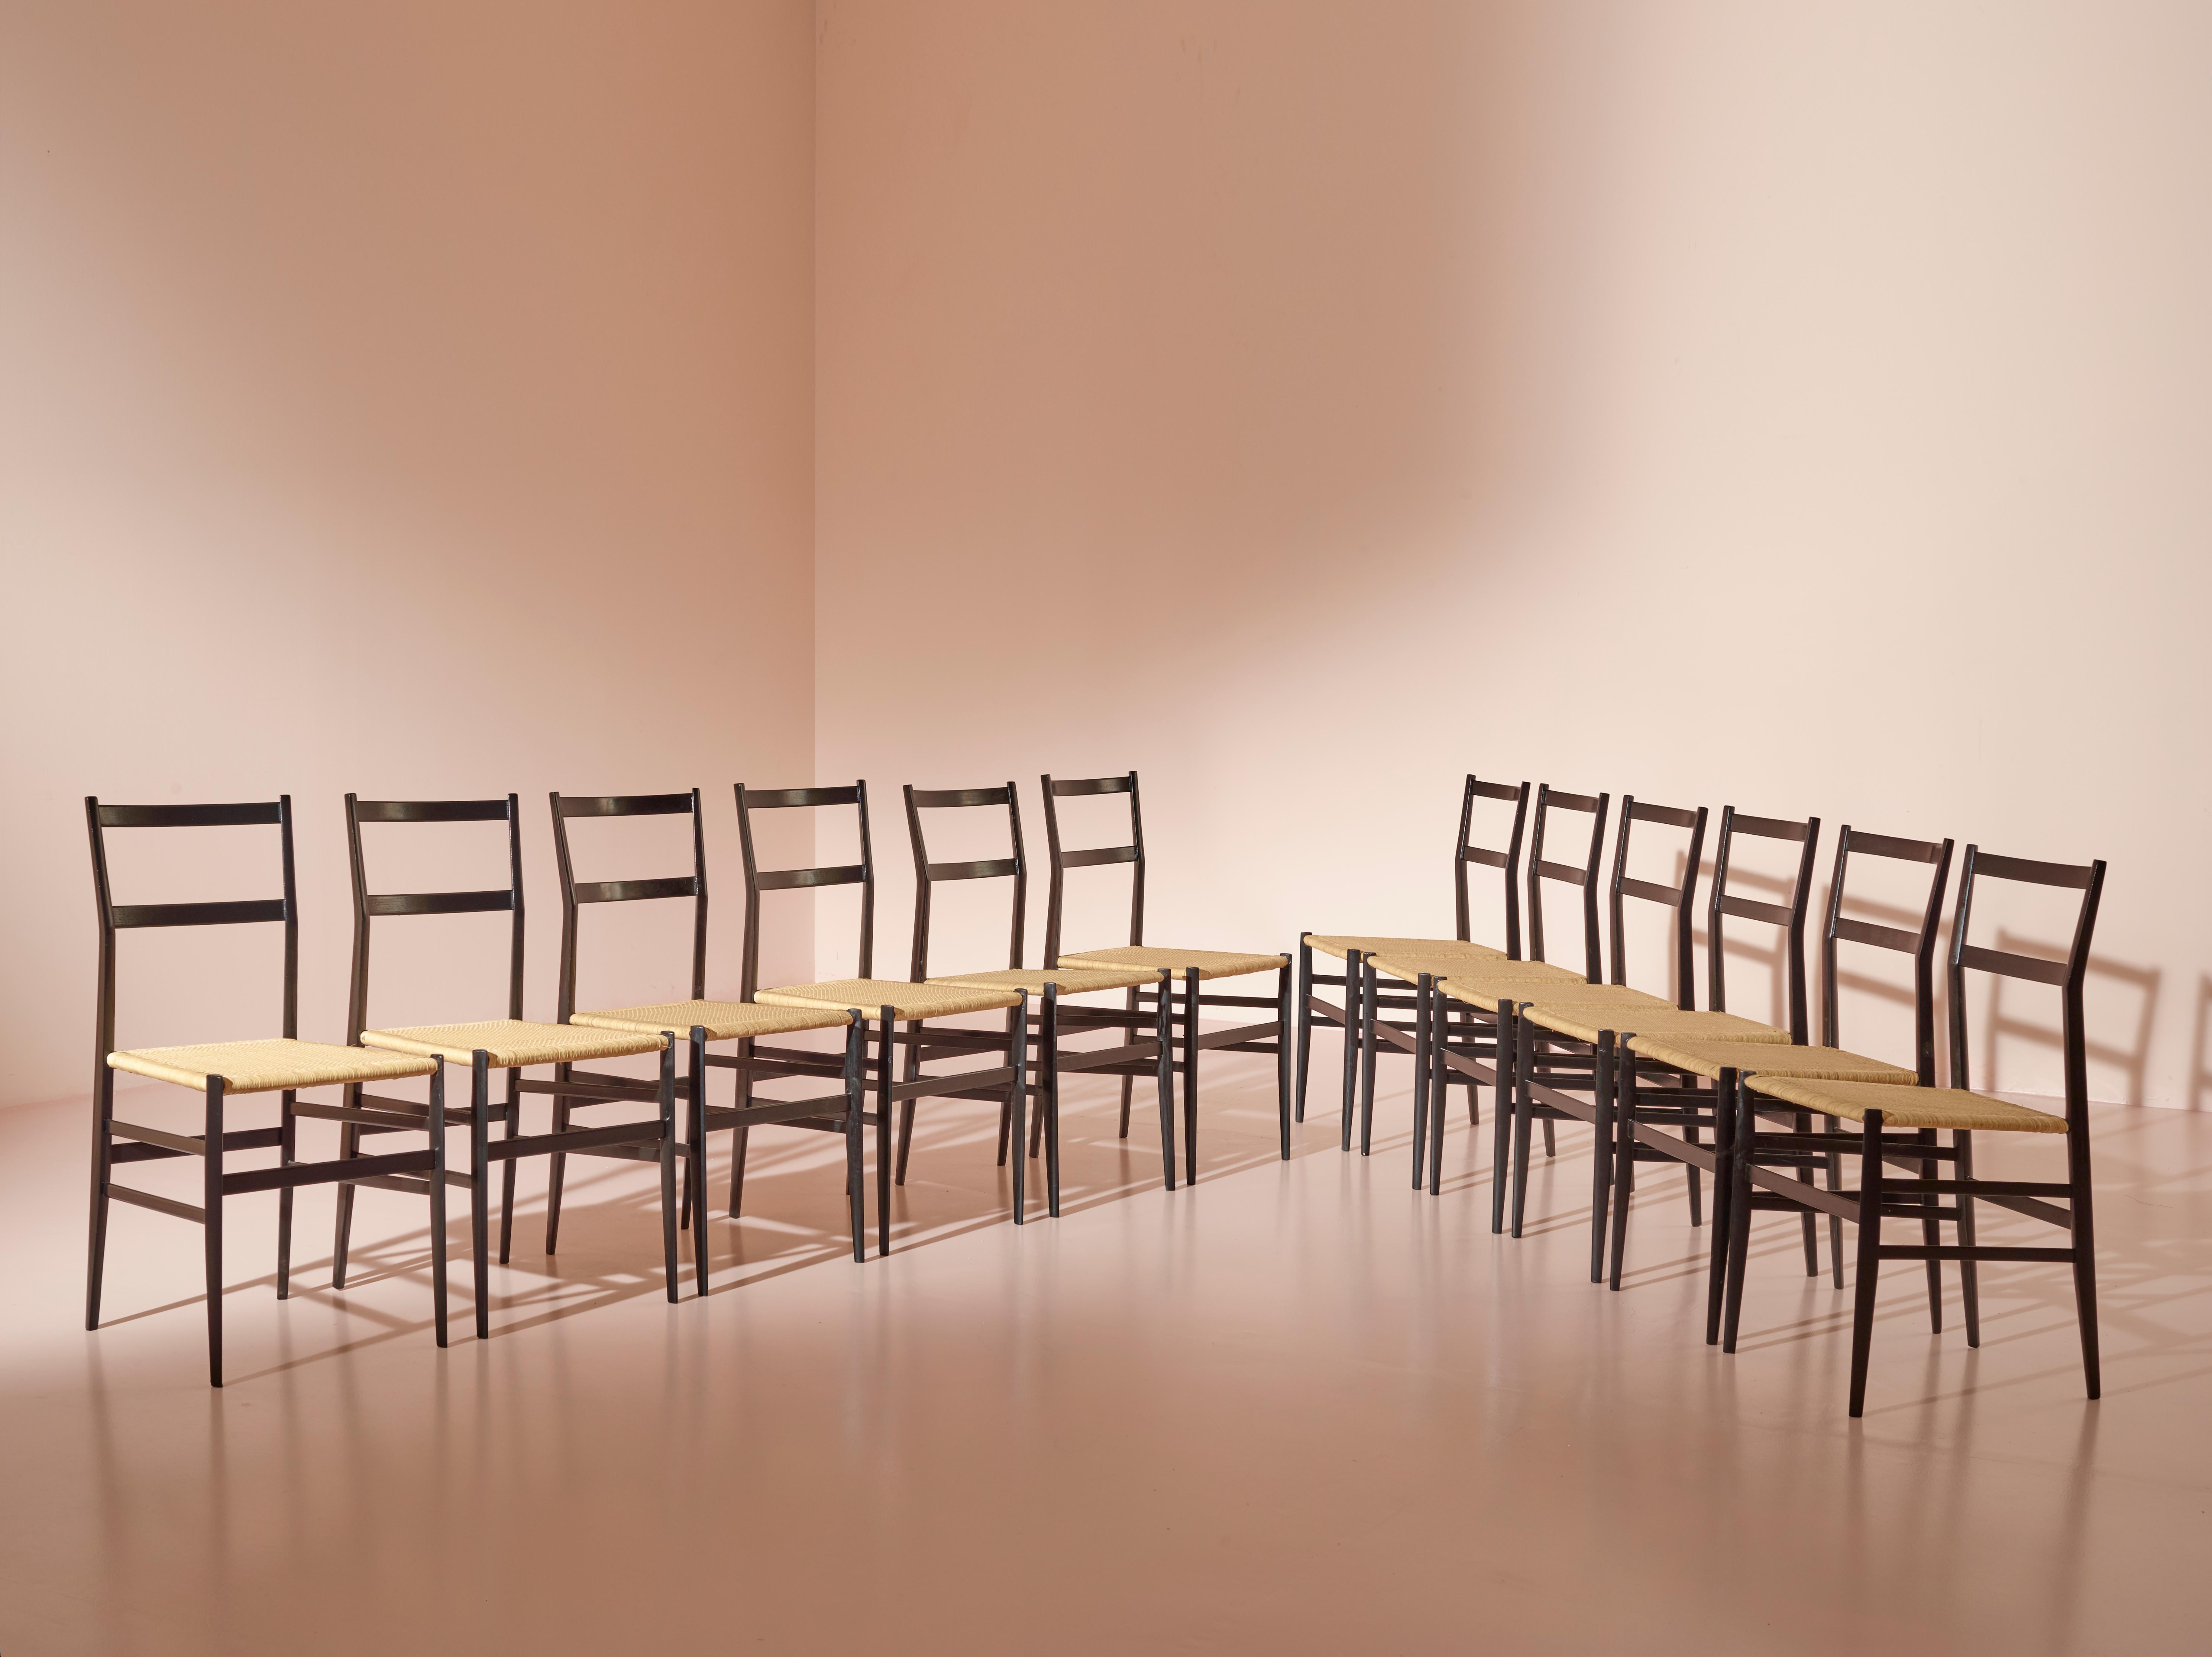 Ein Satz von zwölf Superleggera-Stühlen, sorgfältig restauriert in schwarzer Anilinfarbe. Die ursprünglichen geflochtenen Strohsitze wurden durch neue, sorgfältig gearbeitete Sitze ersetzt, die das leichte Wesen des Stuhls bewahren. 

Der